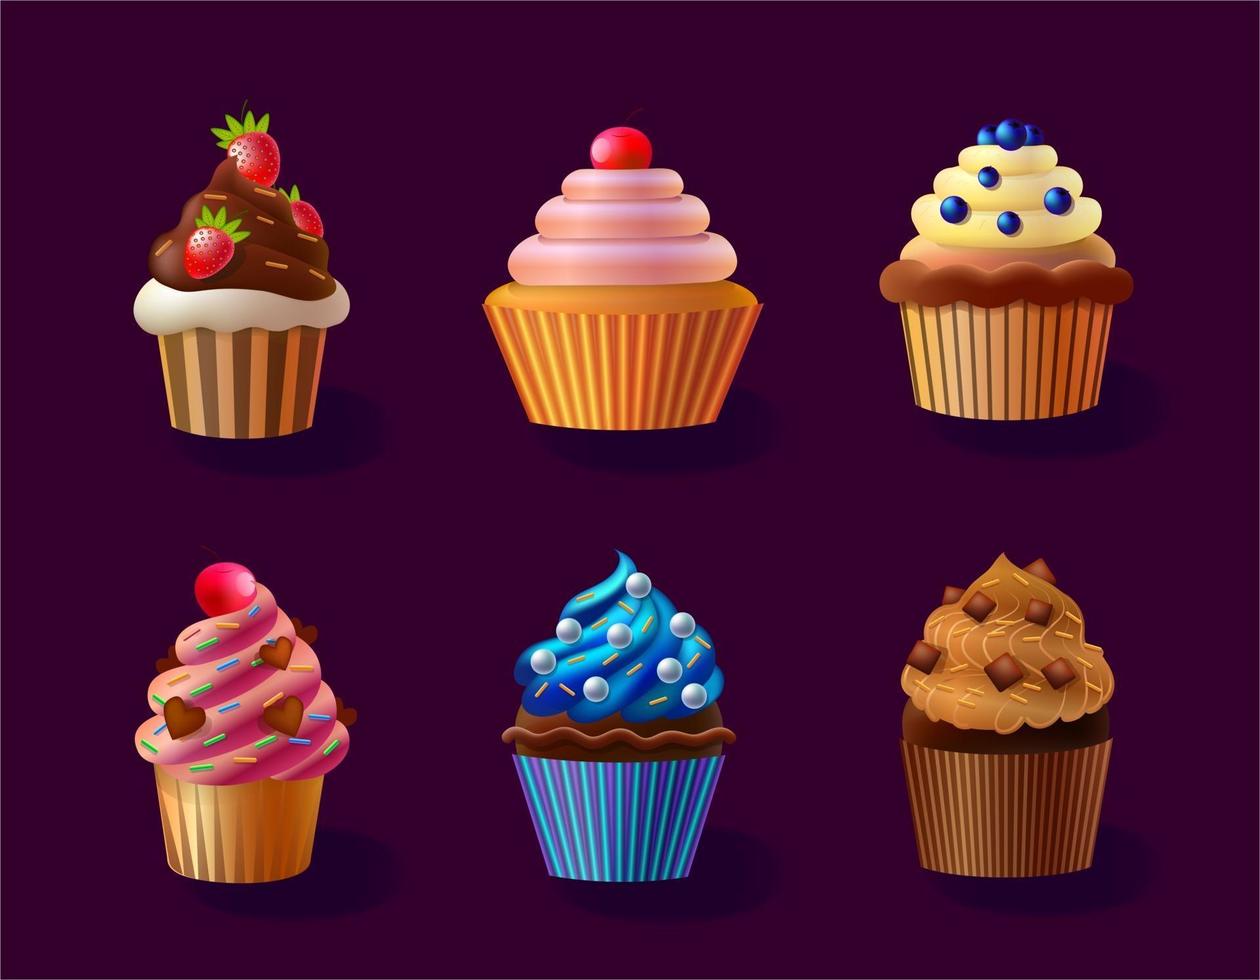 vector cupcakes geïsoleerde illustratie, taarten grafisch ontwerp in verschillende kleuren, dessert illustratie, cupcakes met bessen en kersen, cupcake met bes, framboos, aardbei